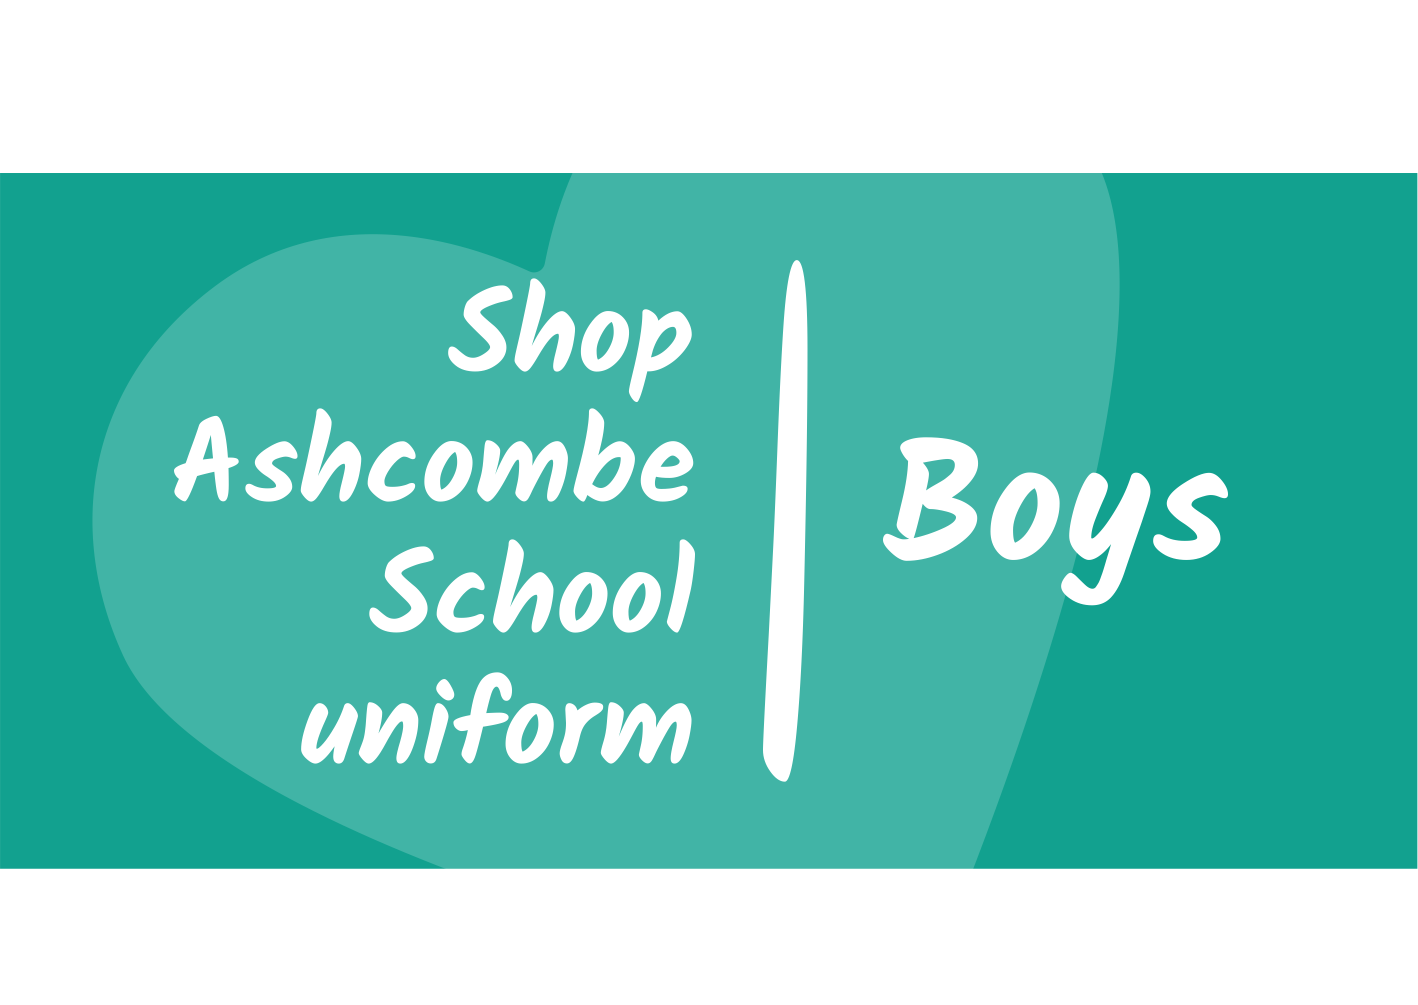 ashcombe uniform icon boys.png